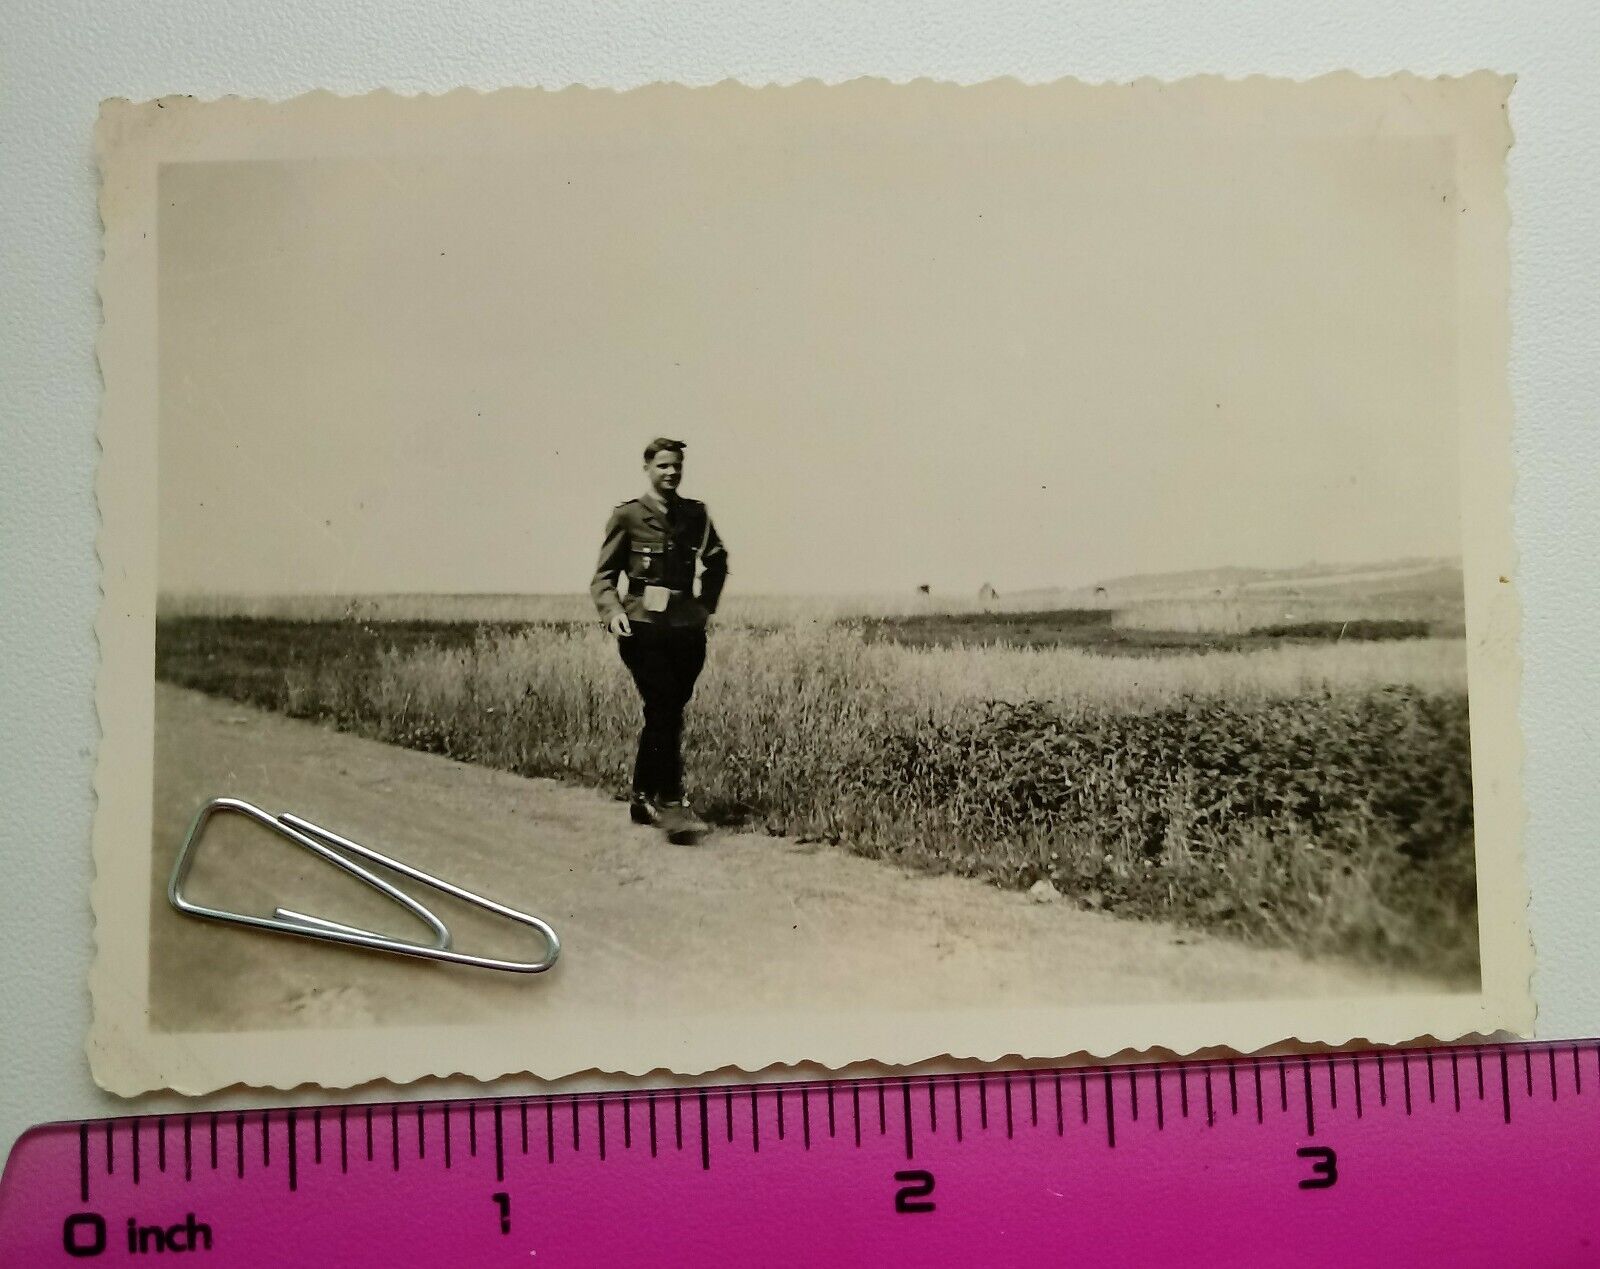 042 WW2 Orig. Photo German Boy Uniform Belt Bag Text 2.5 x 3.5 inch